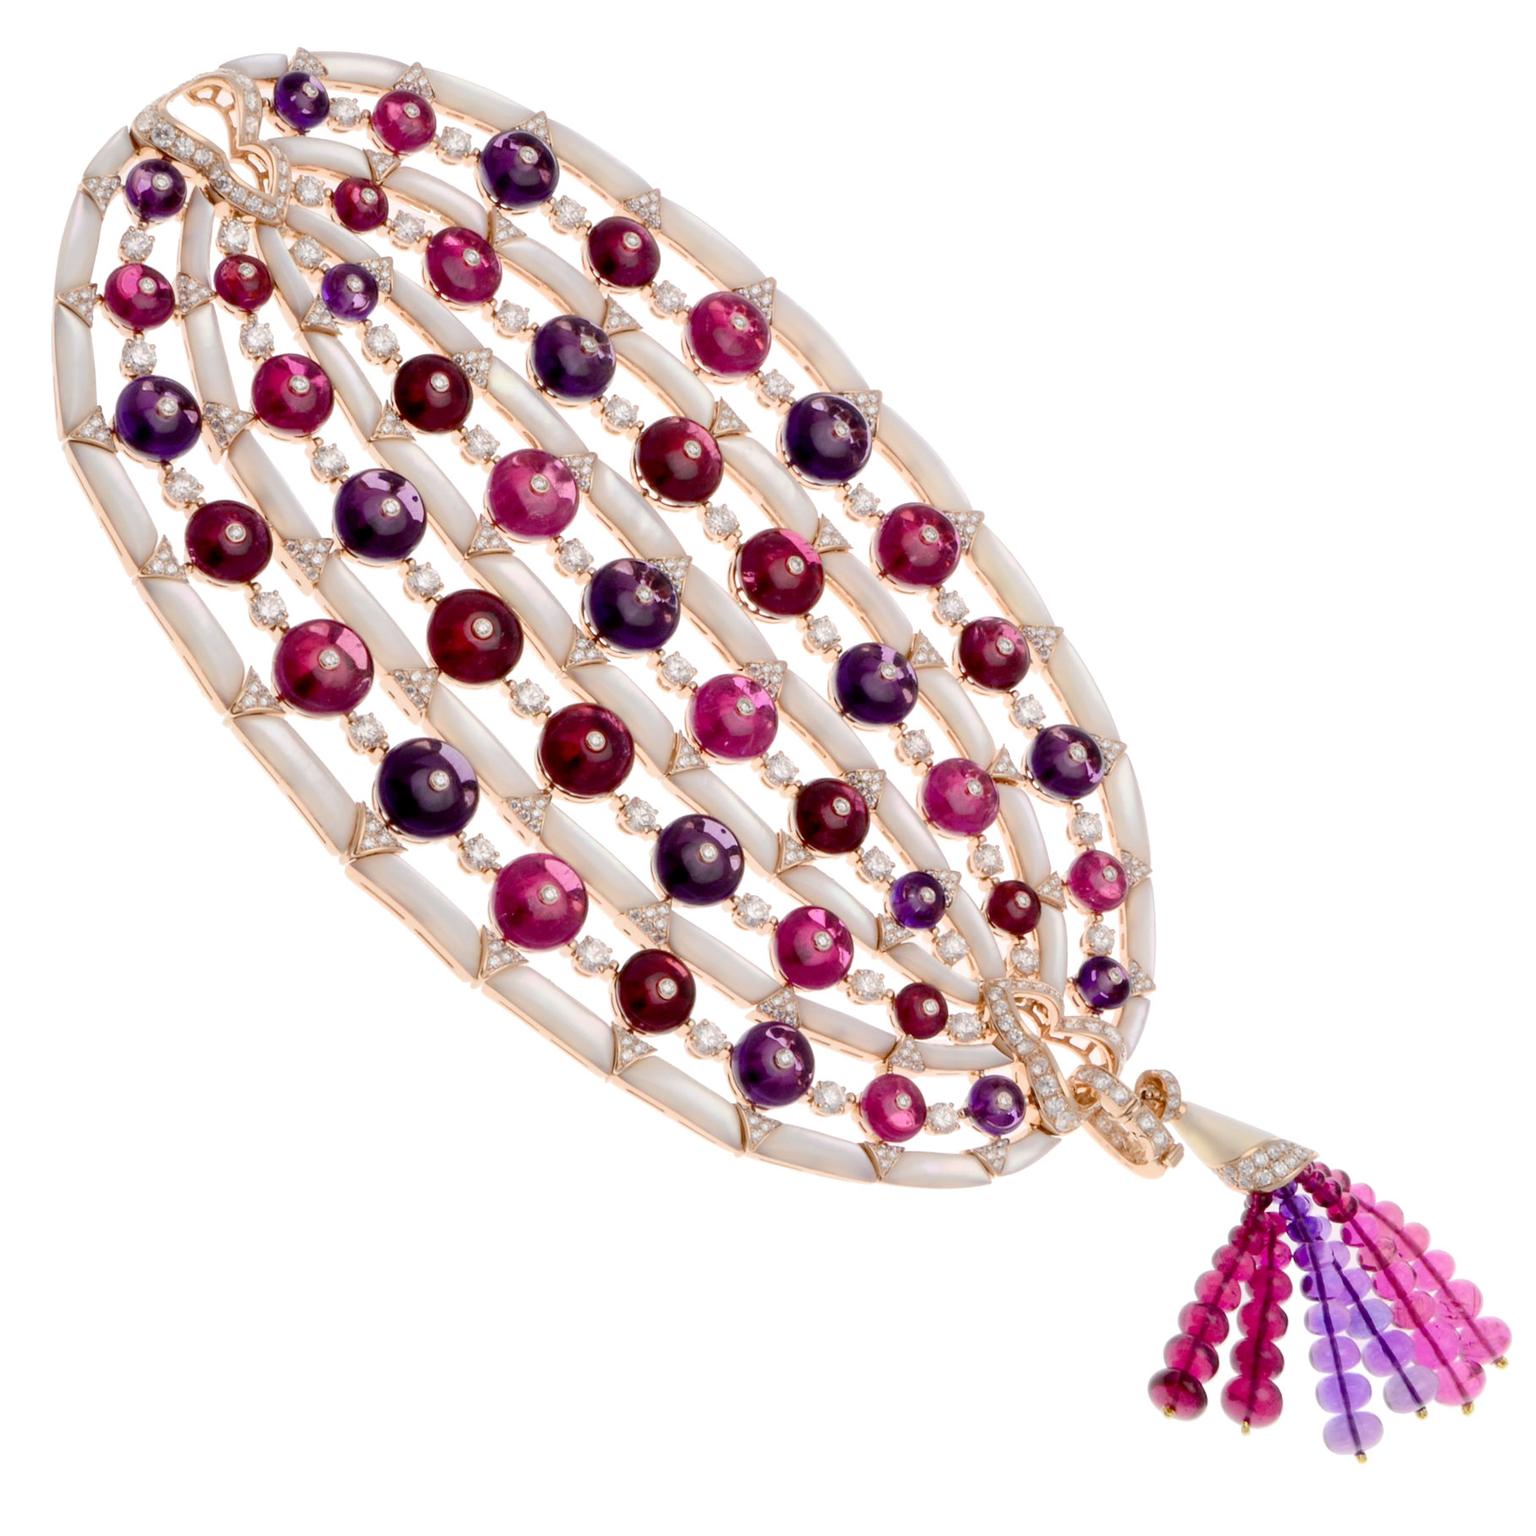 Bulgari multi-coloured gemstone bracelet